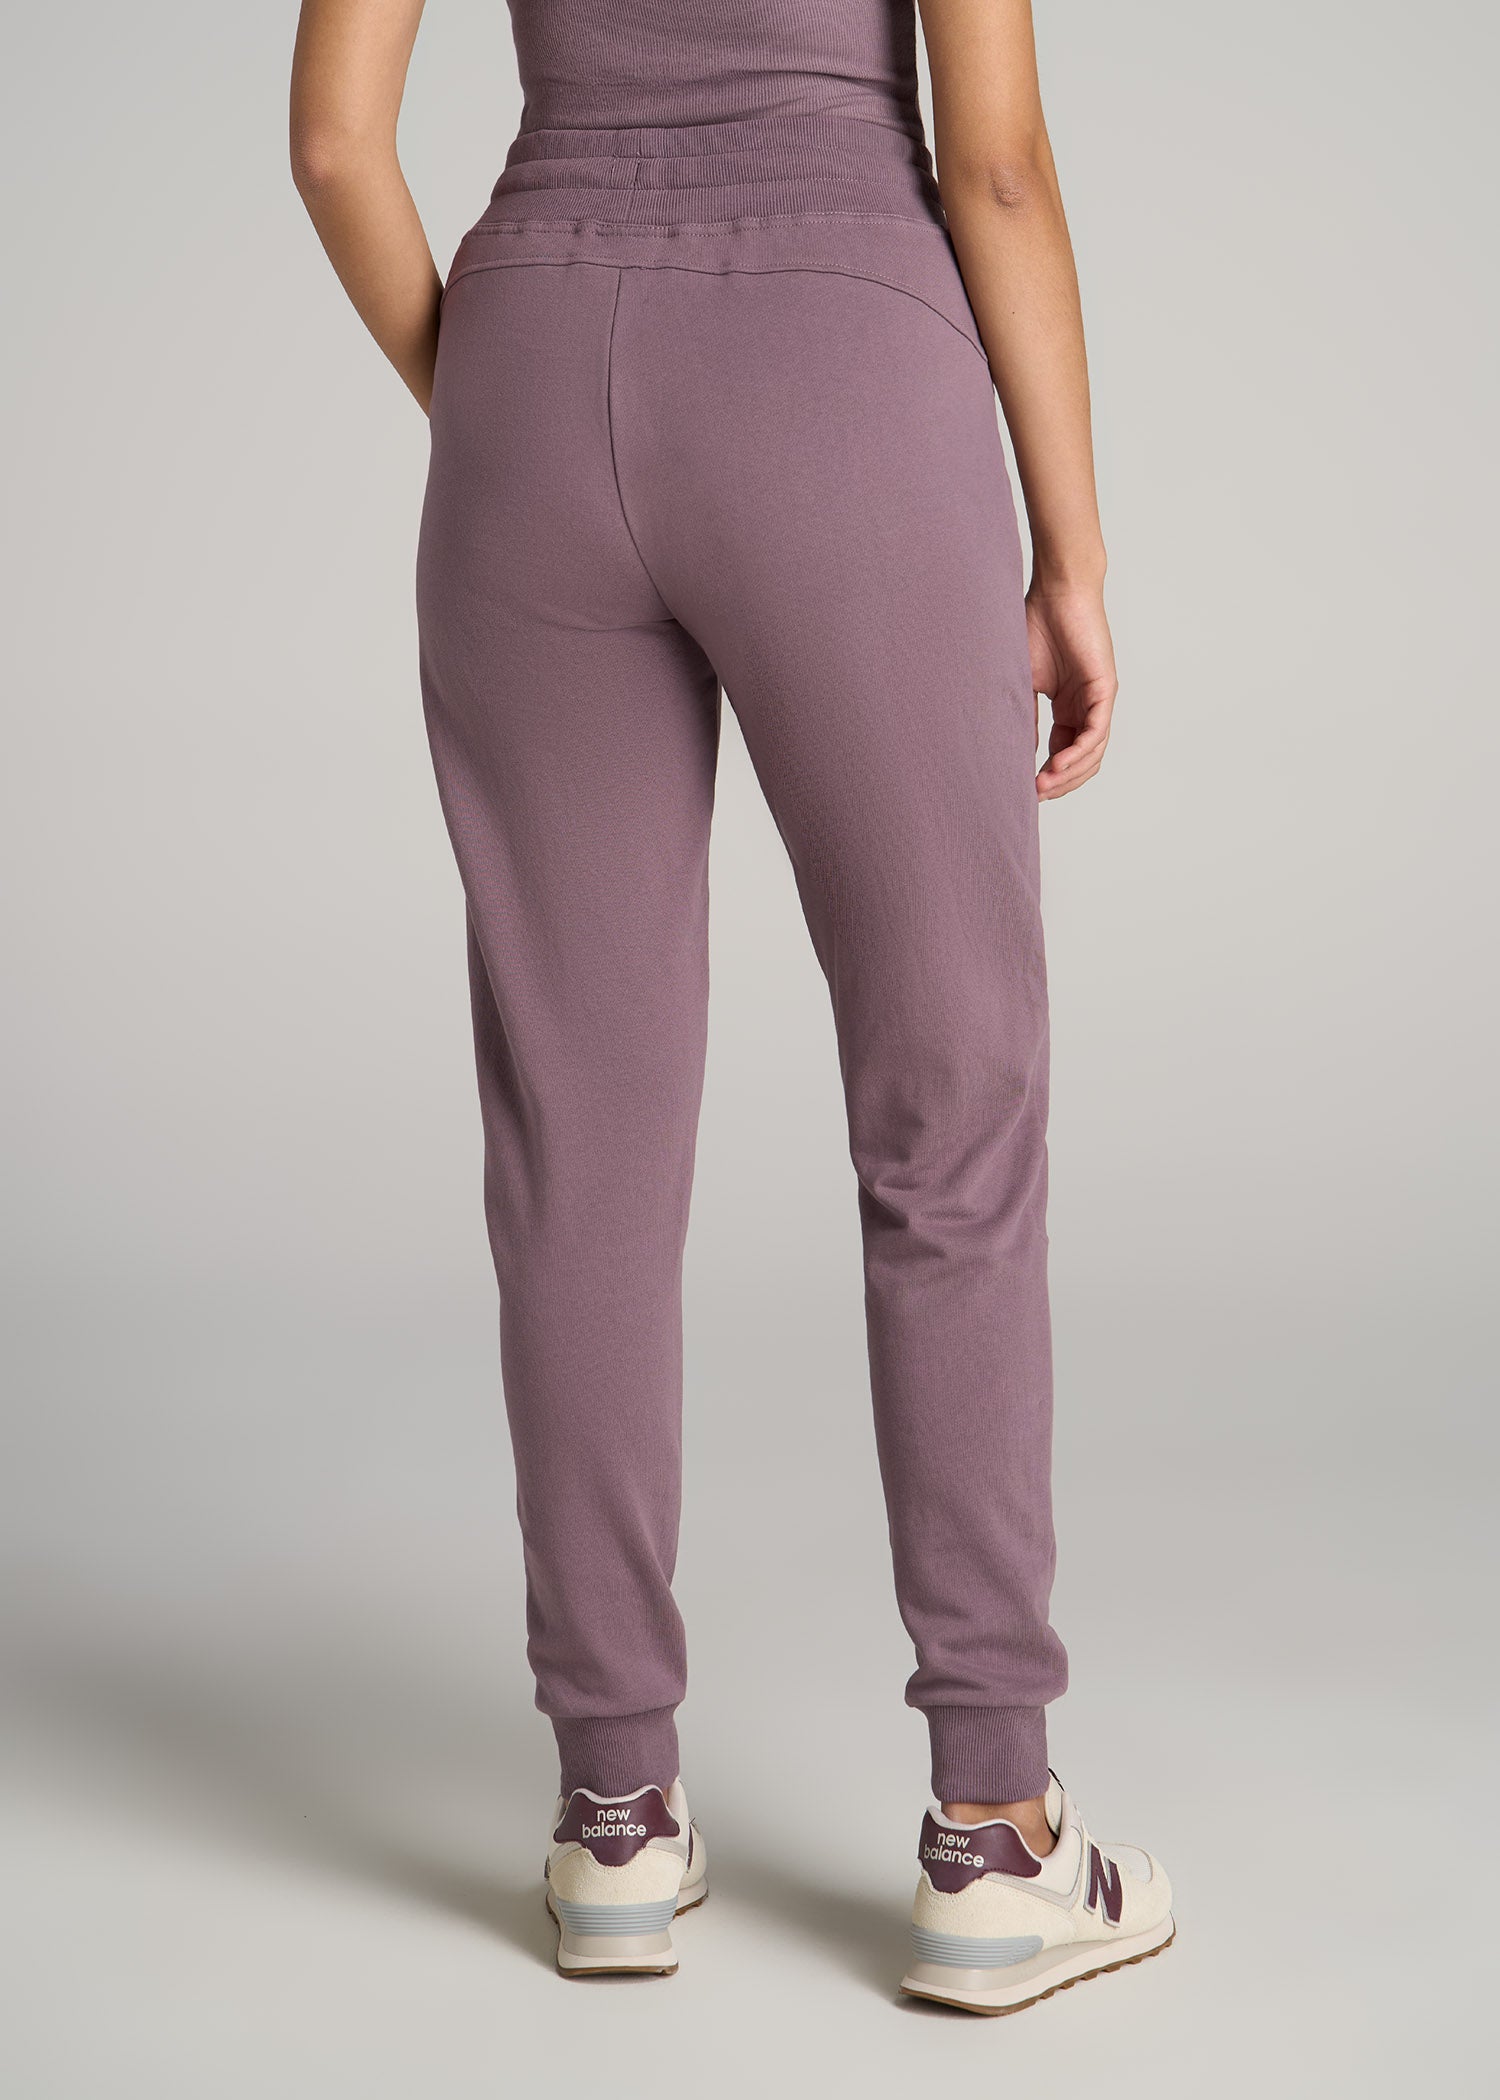 Purple Balancer 6'' drawstring shorts, Lululemon